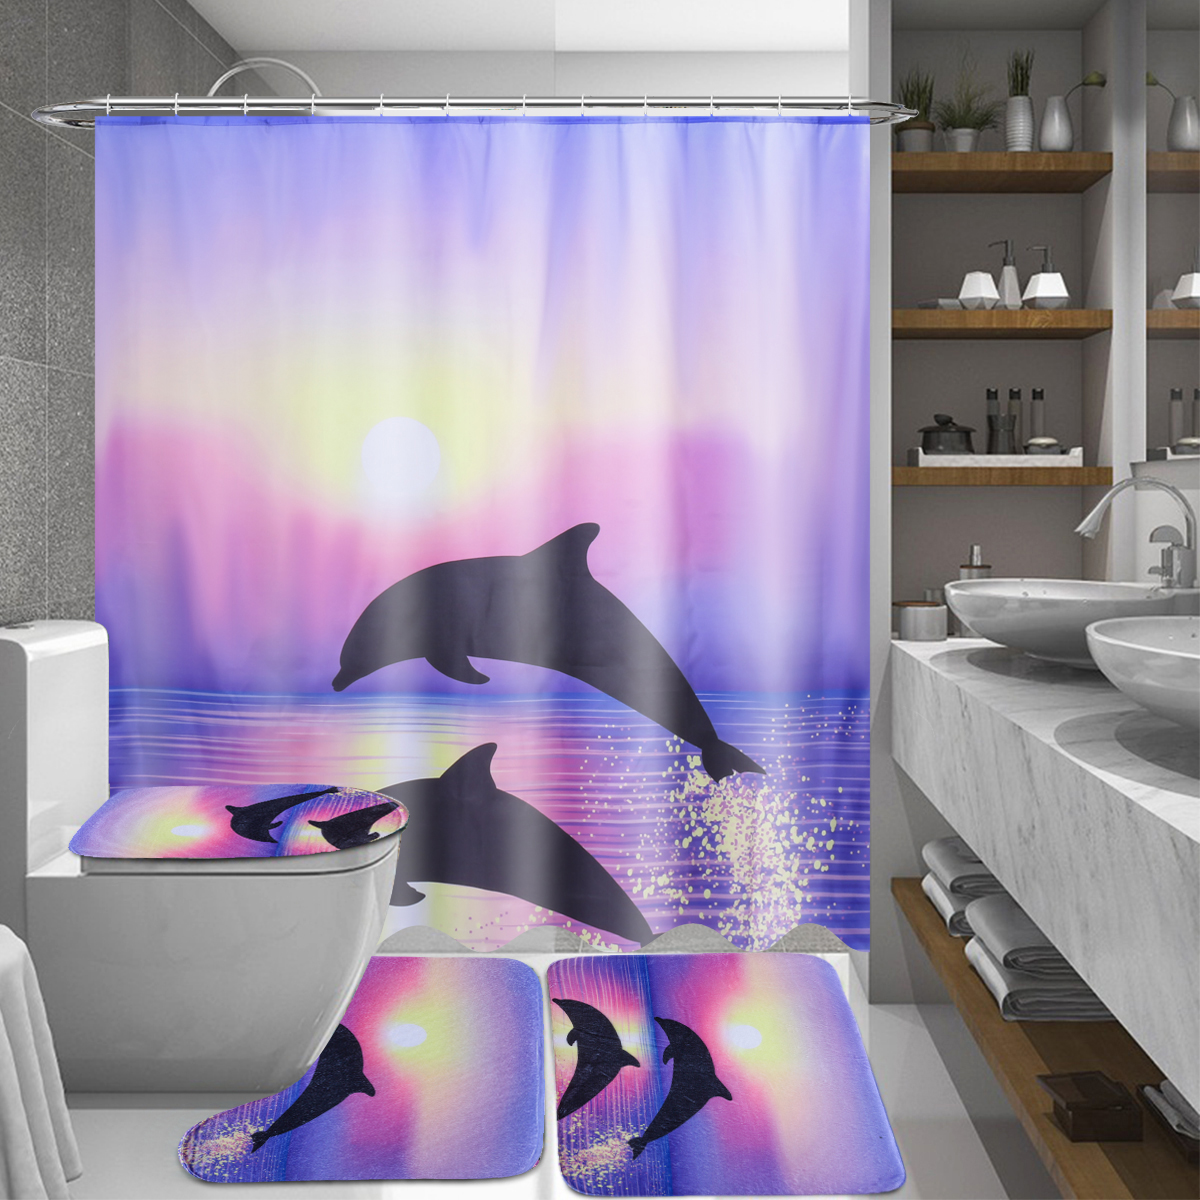 

180 x 180 см Дельфин Океан с 12 крючками Ванная комната Душ Водонепроницаемы Шторы